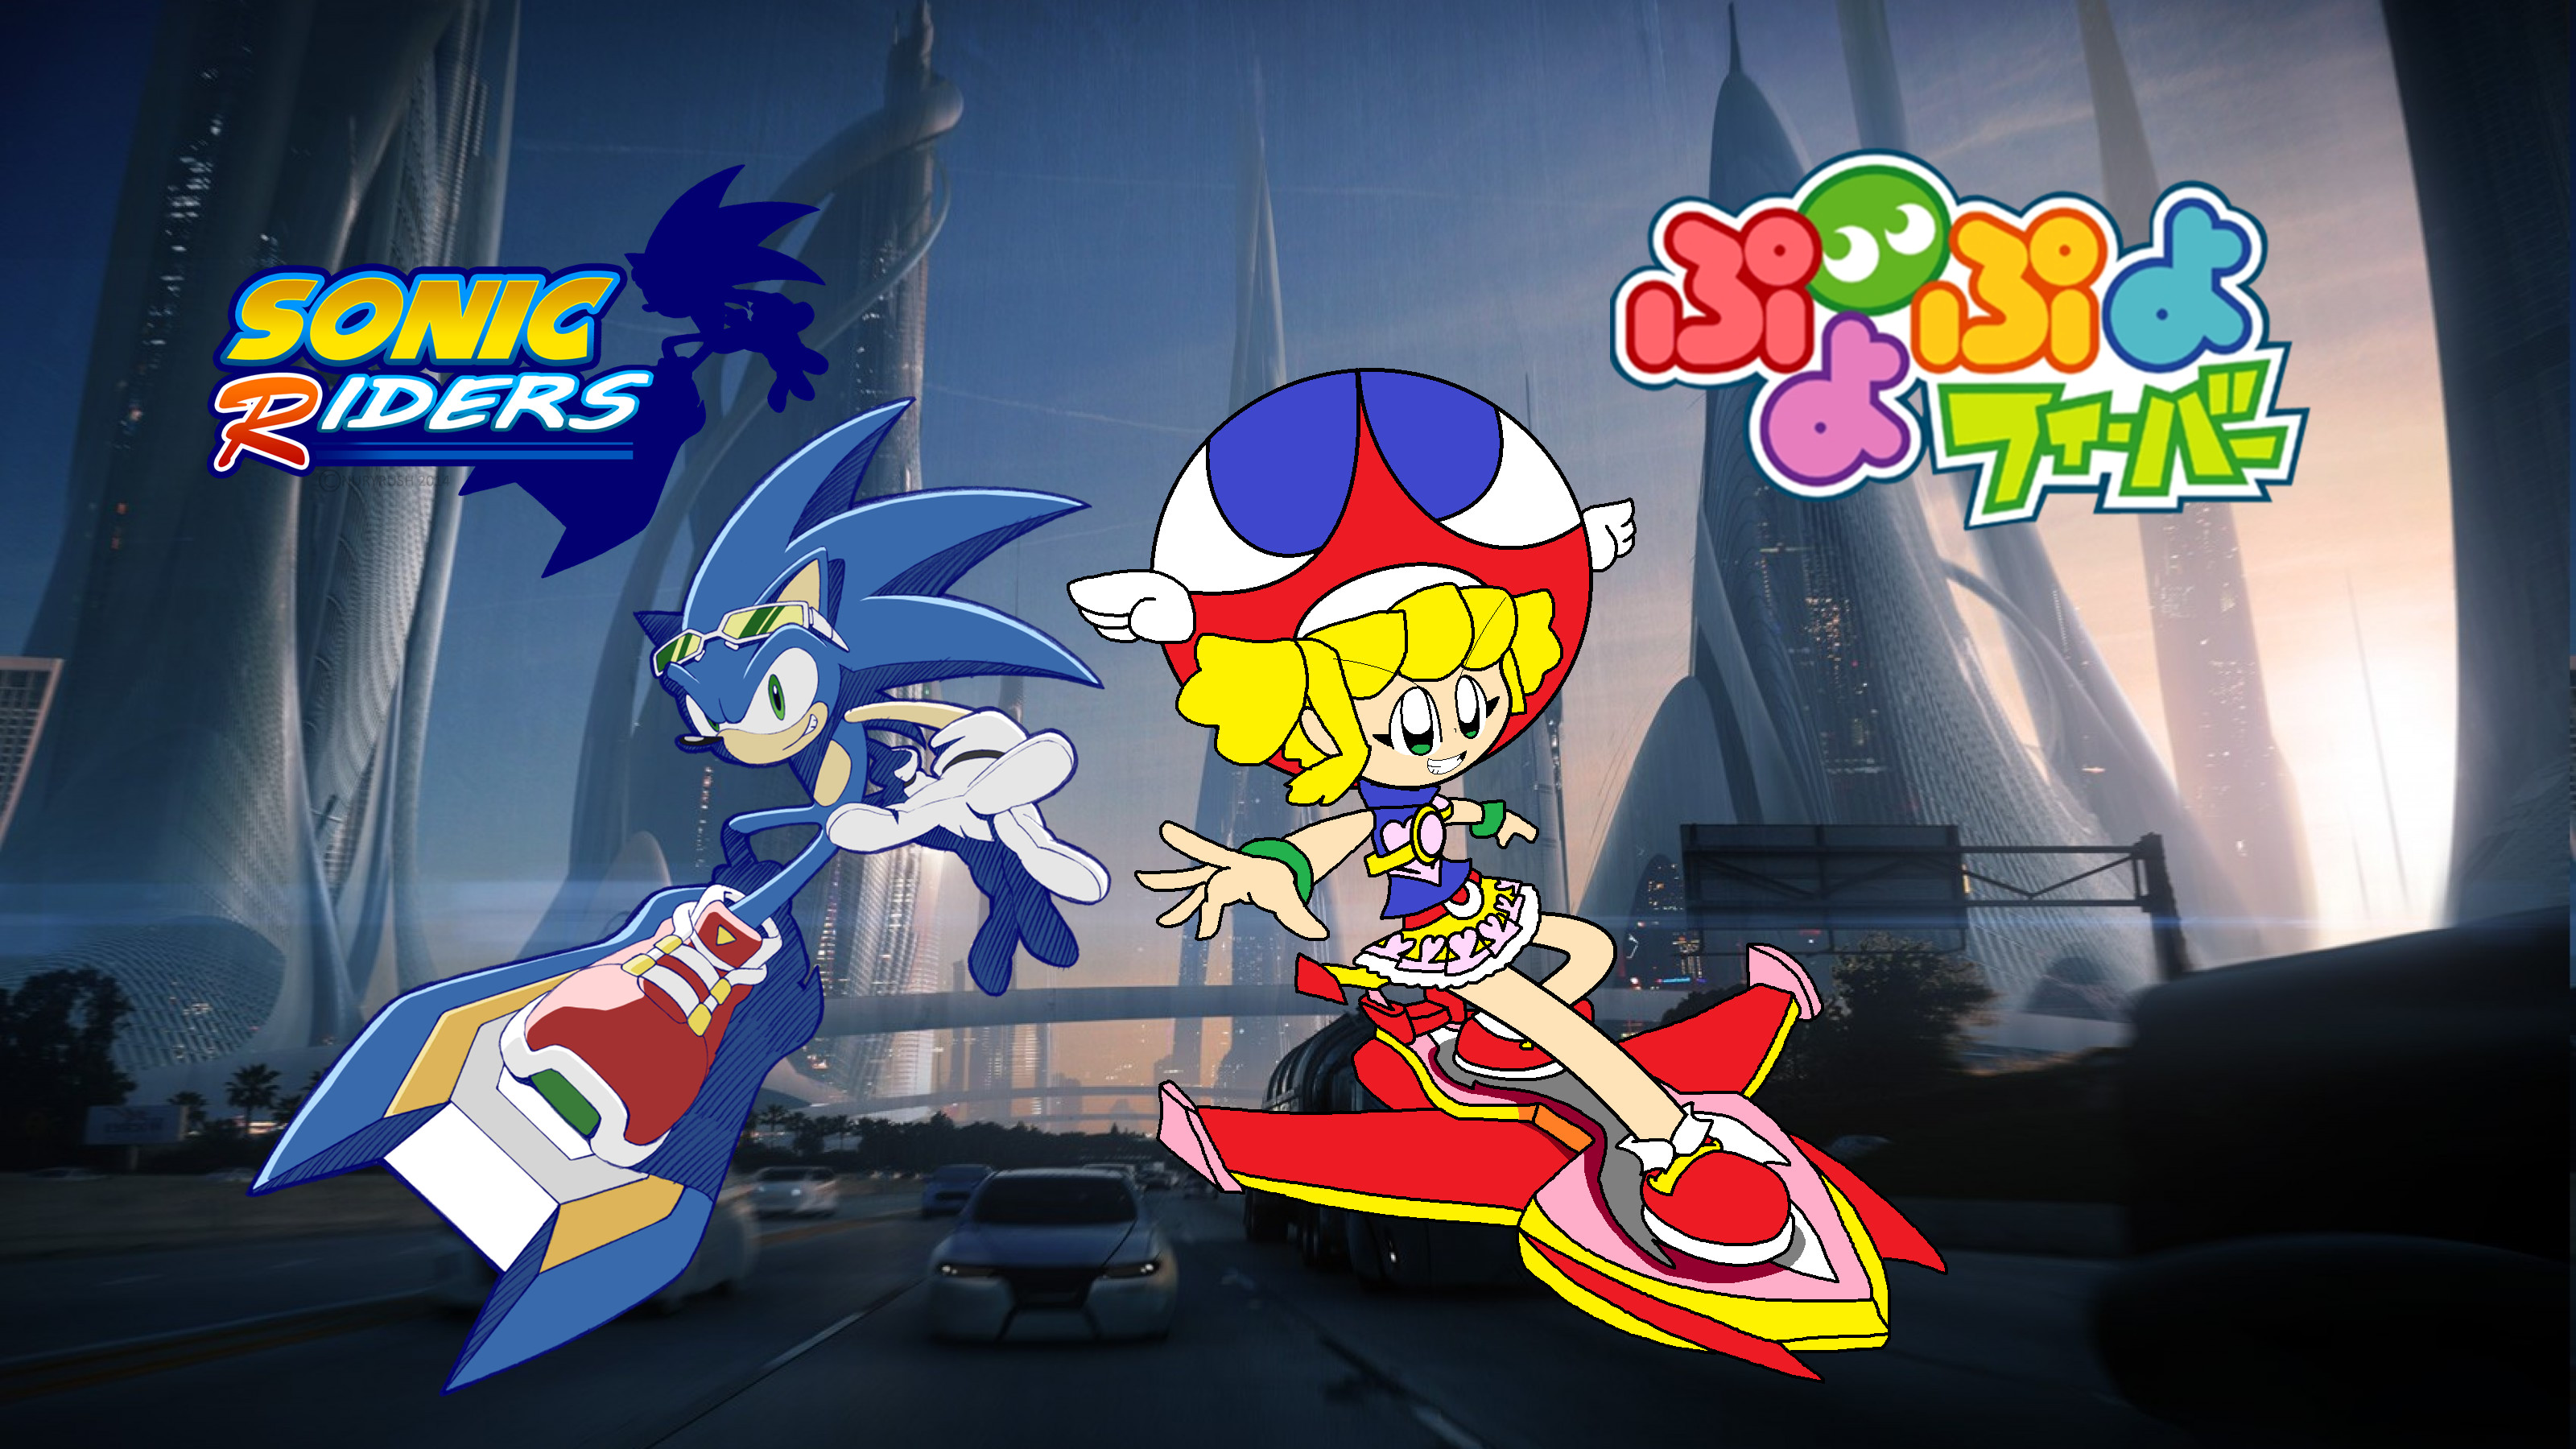 3200x1800 ... Sonic Riders and Puyo Puyo Fever: Sonic and Amitie by wilsonasmara